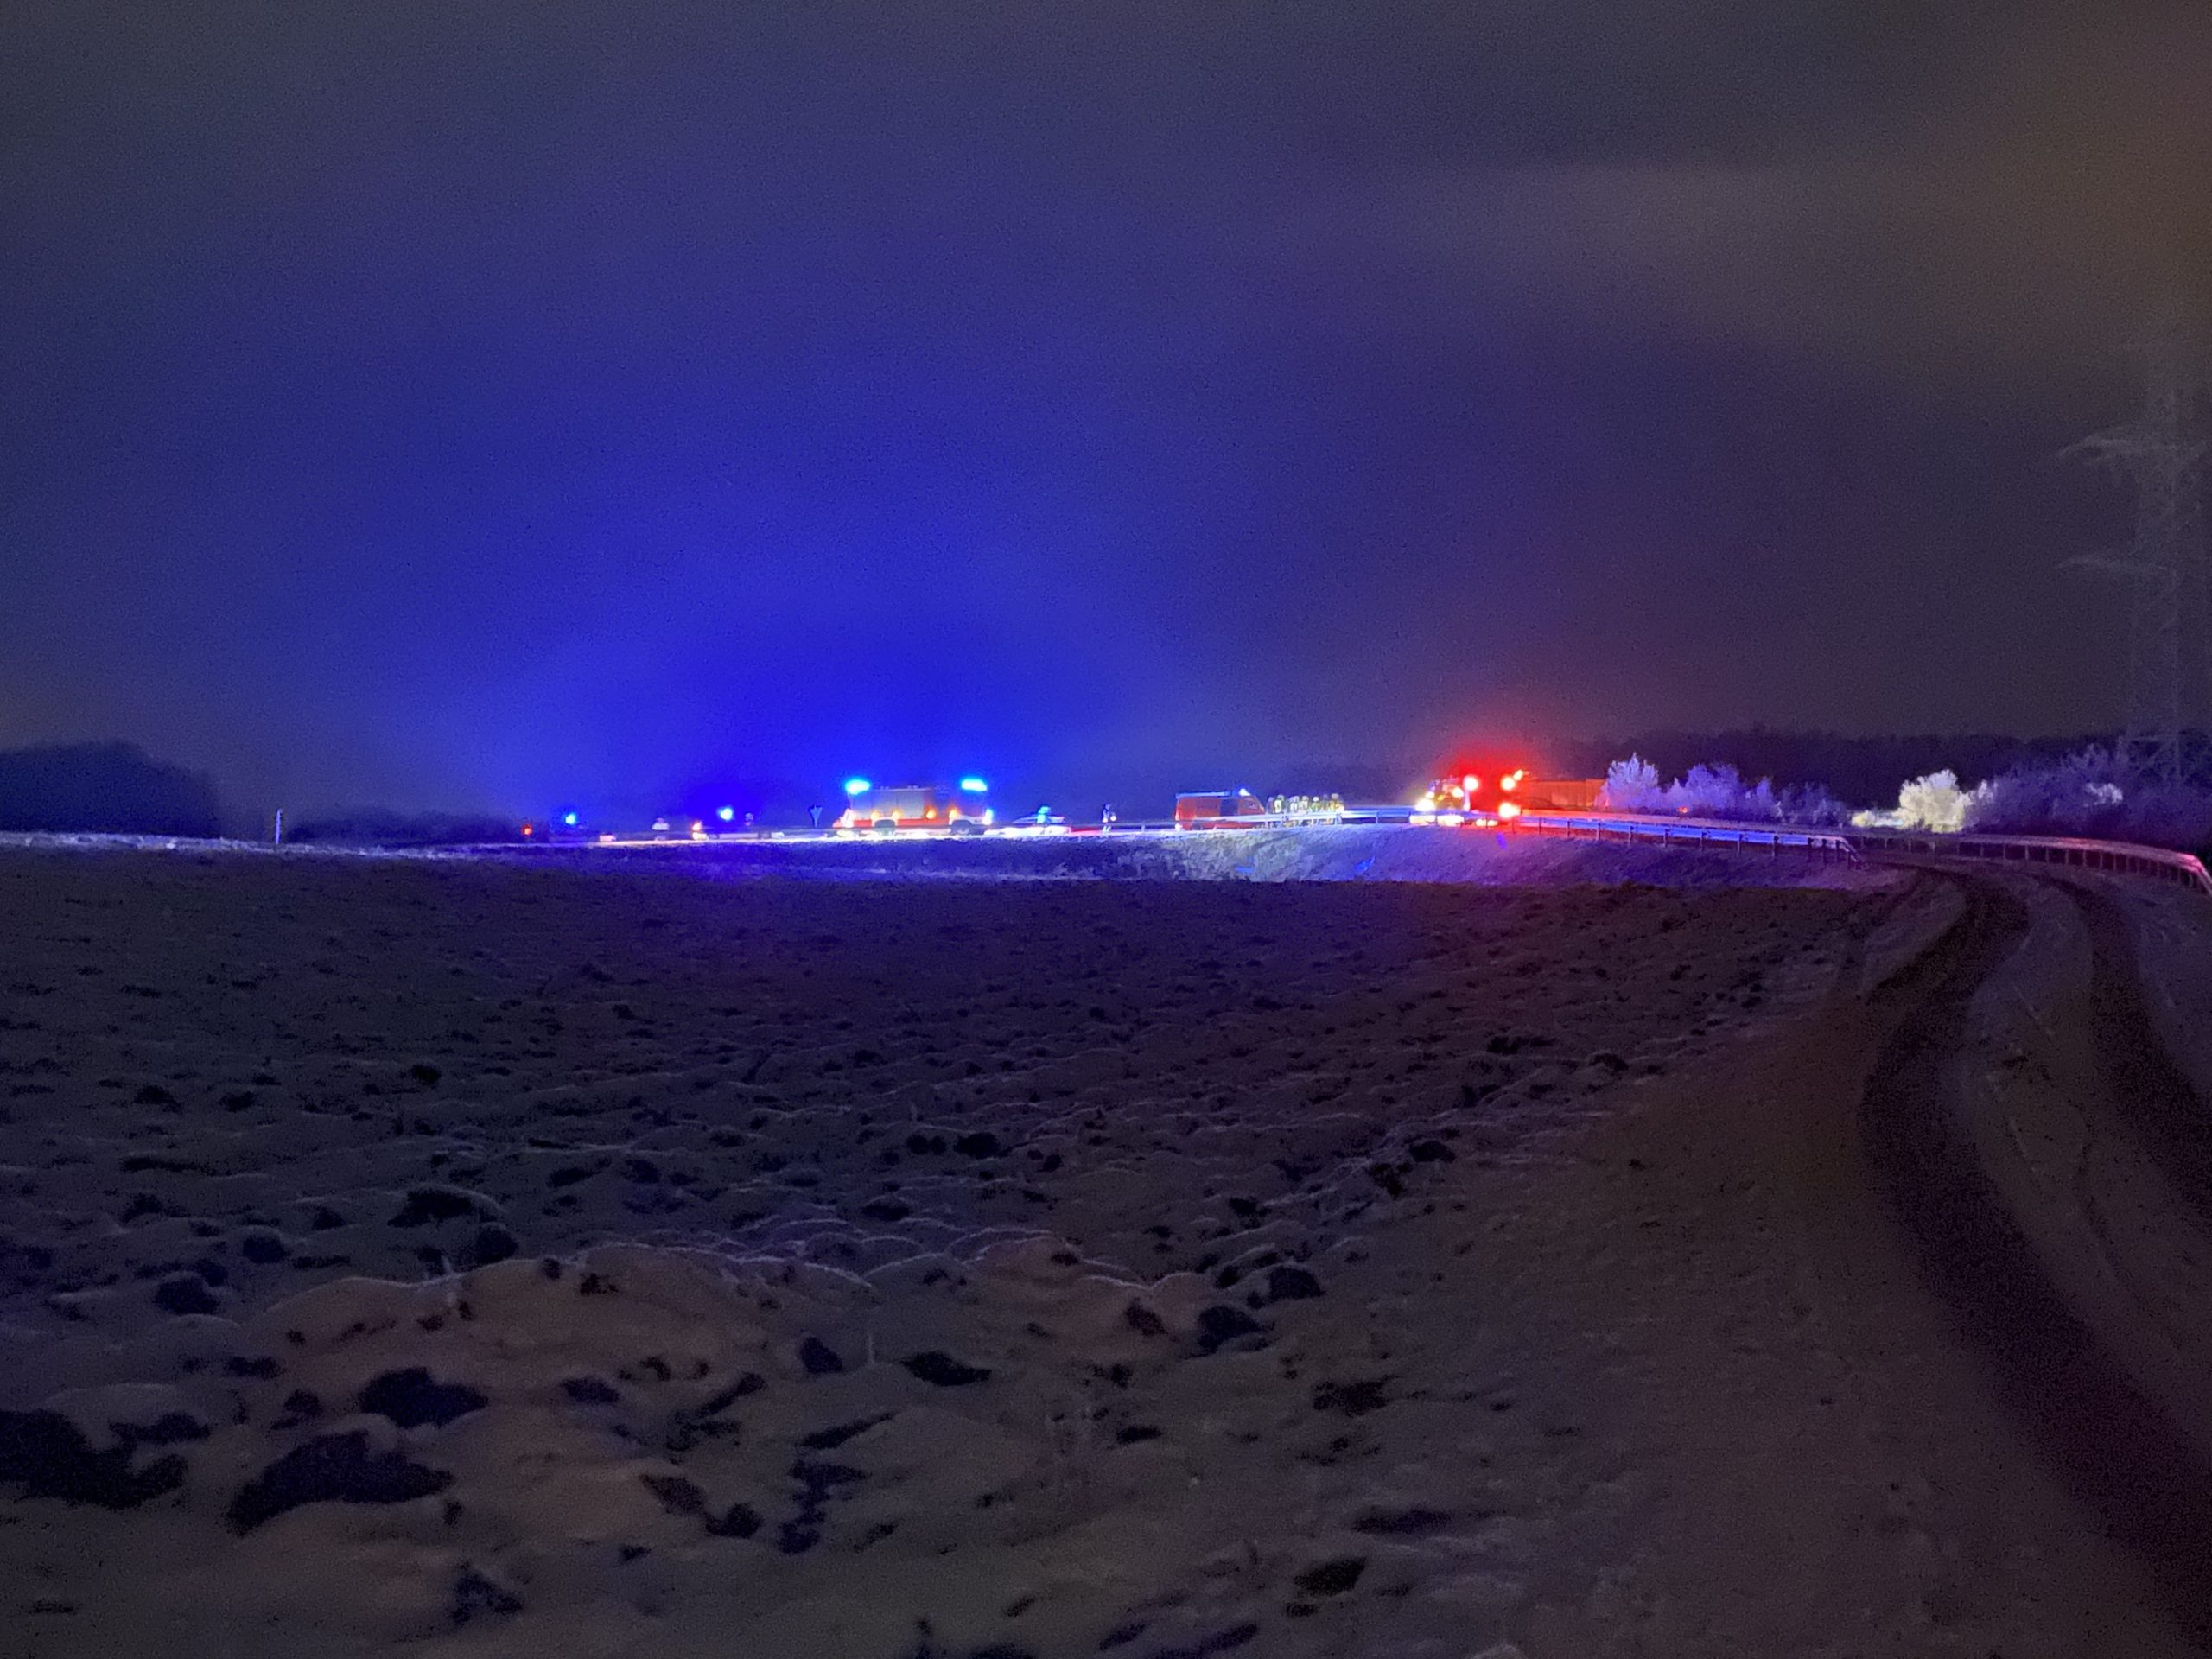 Feuerwehrfahrzeuge bei Nacht im schnee